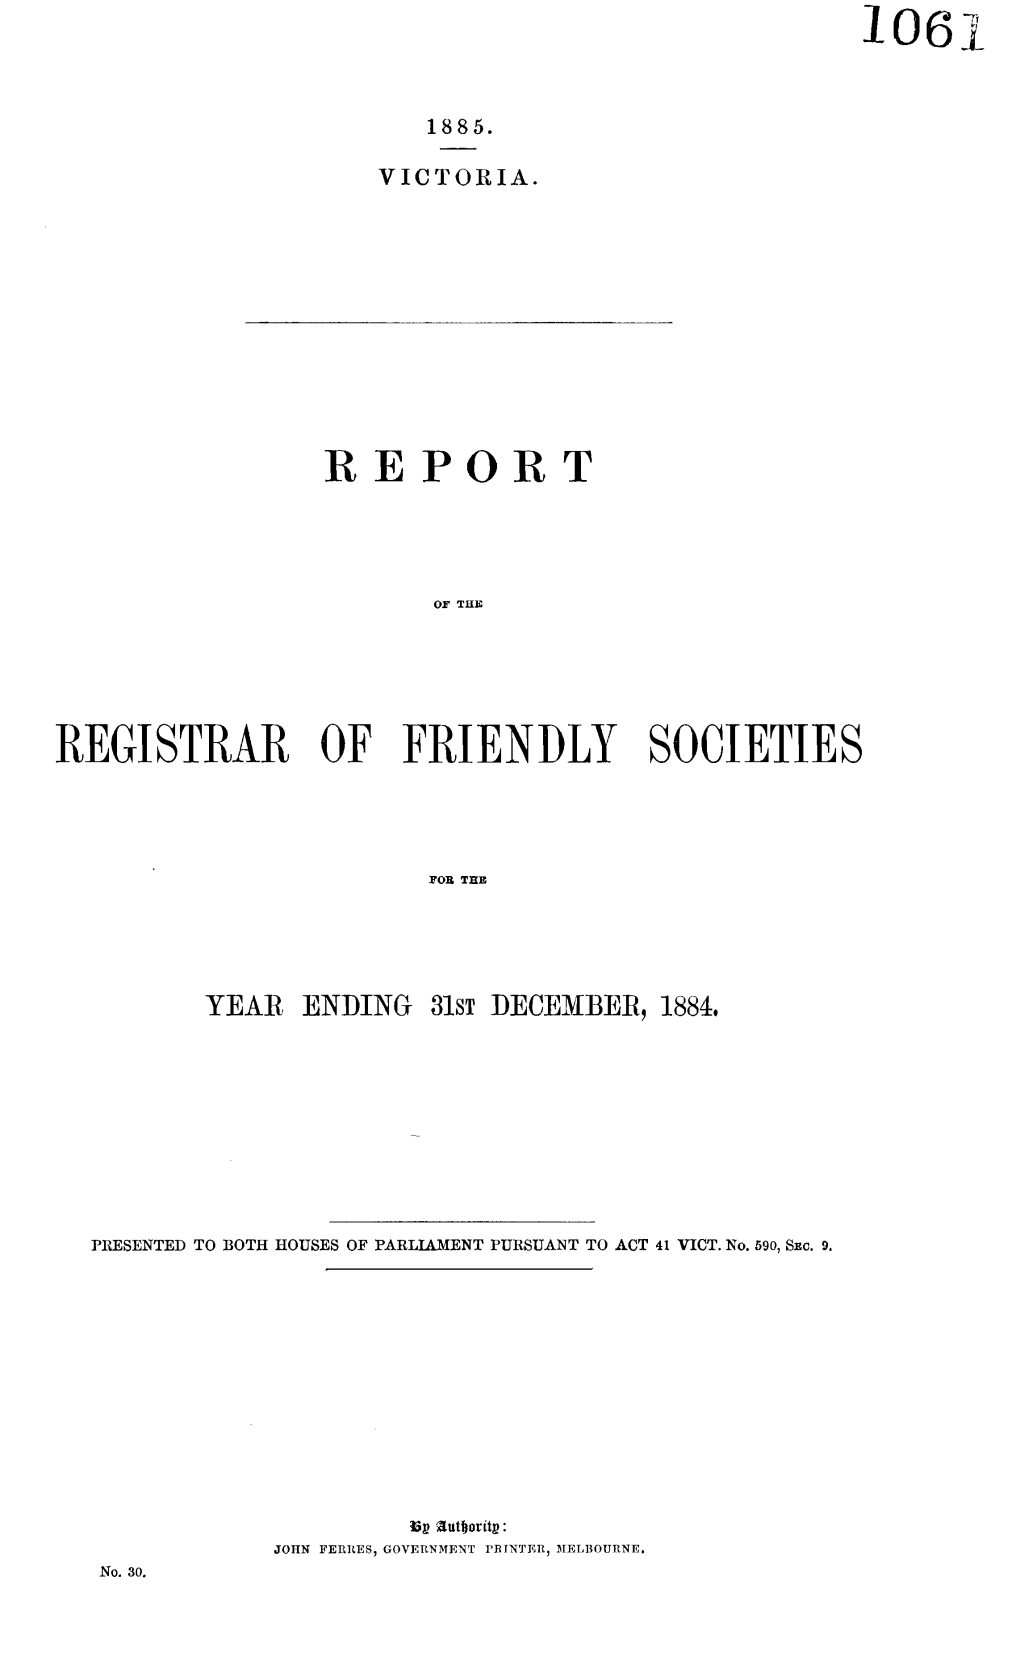 Registrar of Friendly Societies